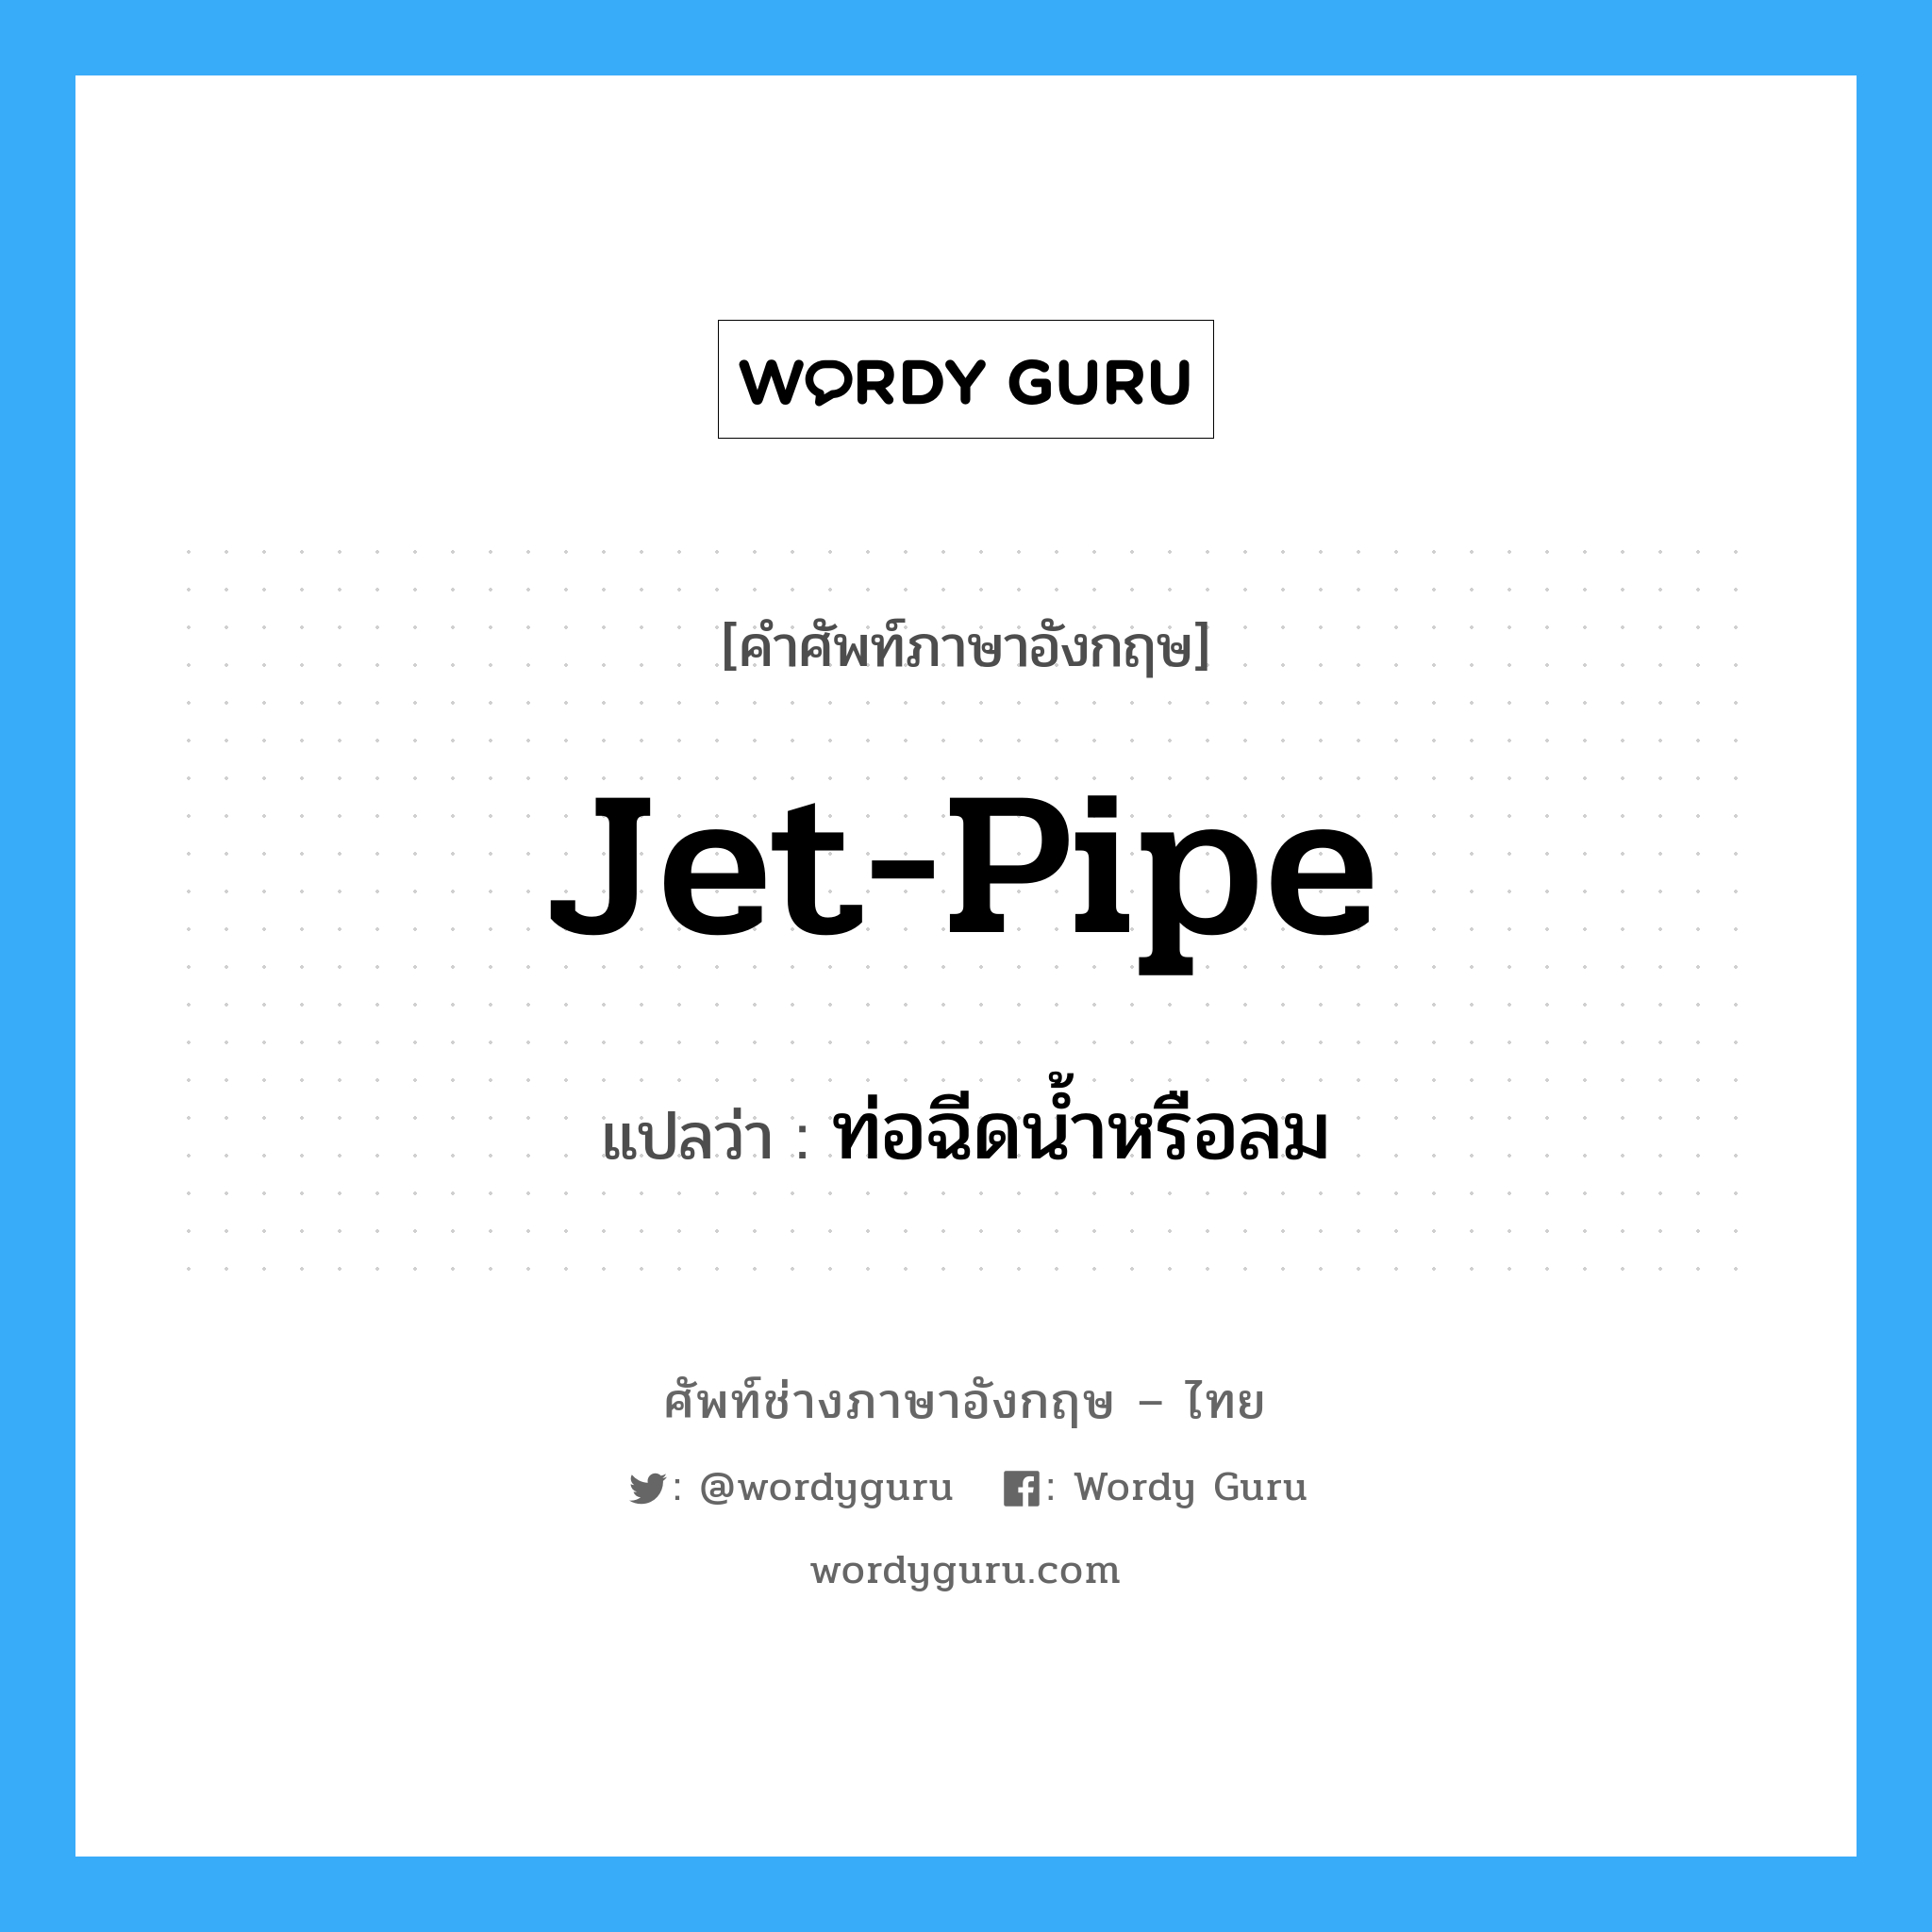 jet-pipe แปลว่า?, คำศัพท์ช่างภาษาอังกฤษ - ไทย jet-pipe คำศัพท์ภาษาอังกฤษ jet-pipe แปลว่า ท่อฉีดน้ำหรือลม